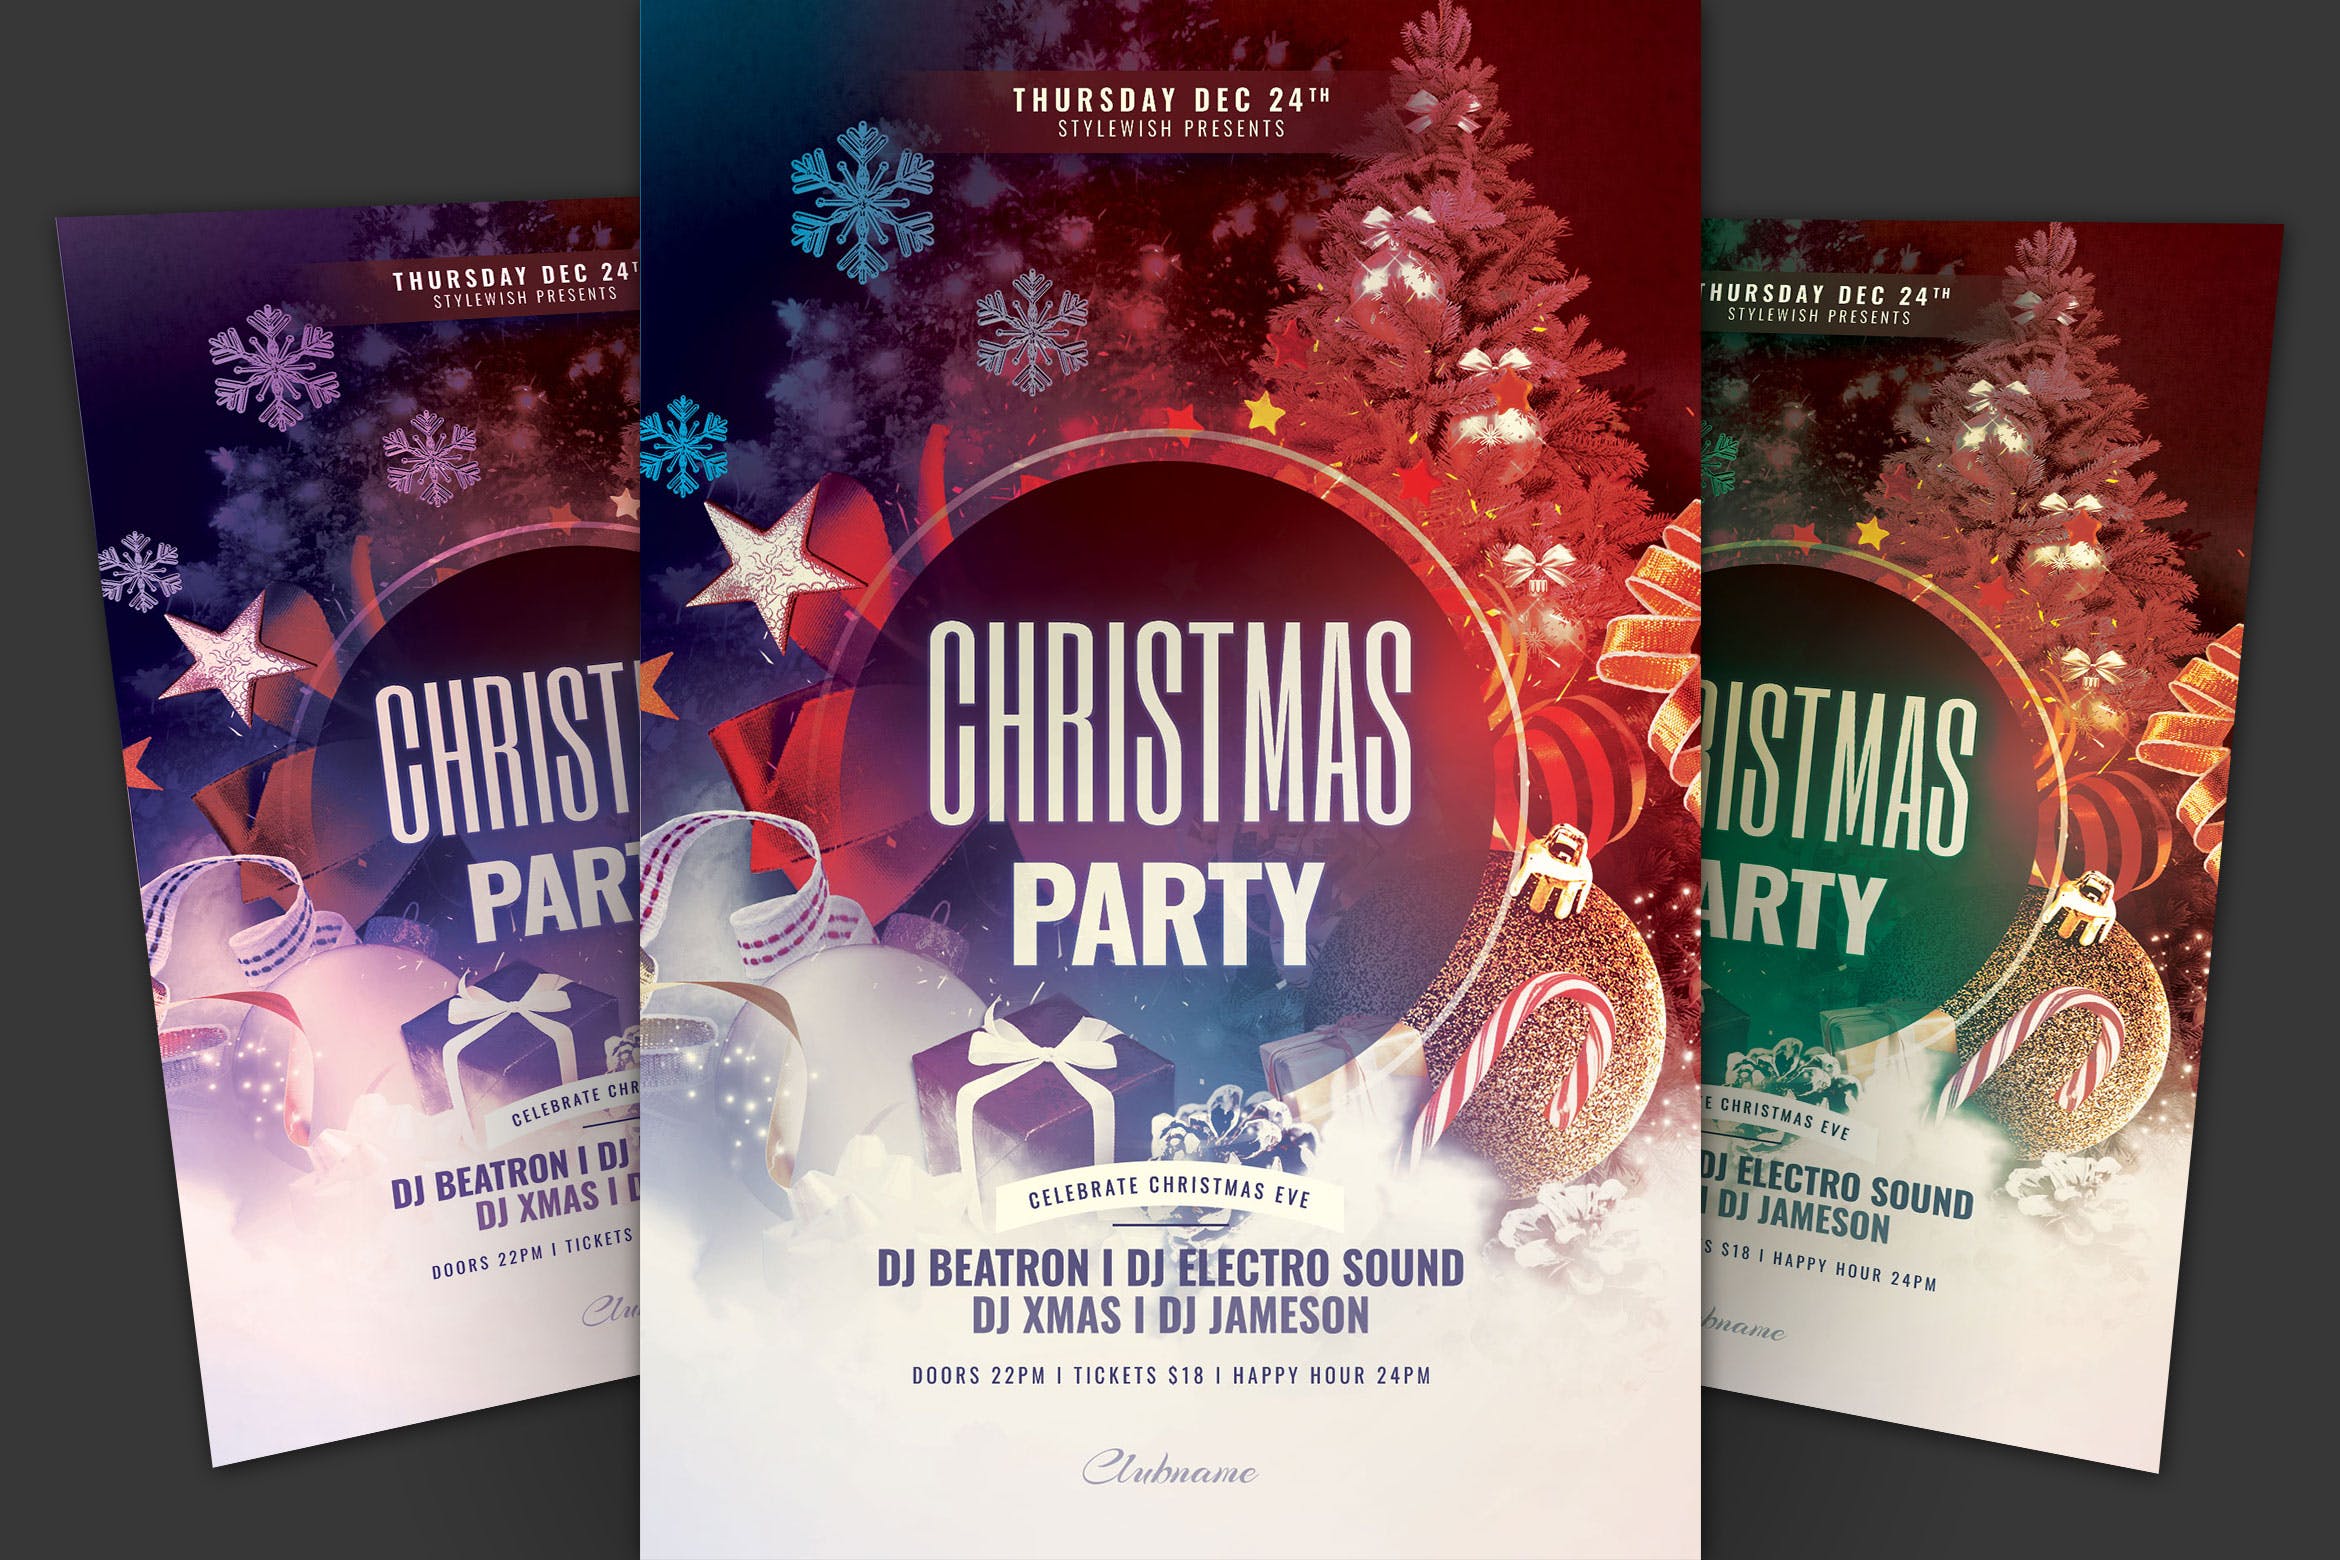 2019年圣诞节派对活动传单海报设计模板 Christmas Party Flyer插图